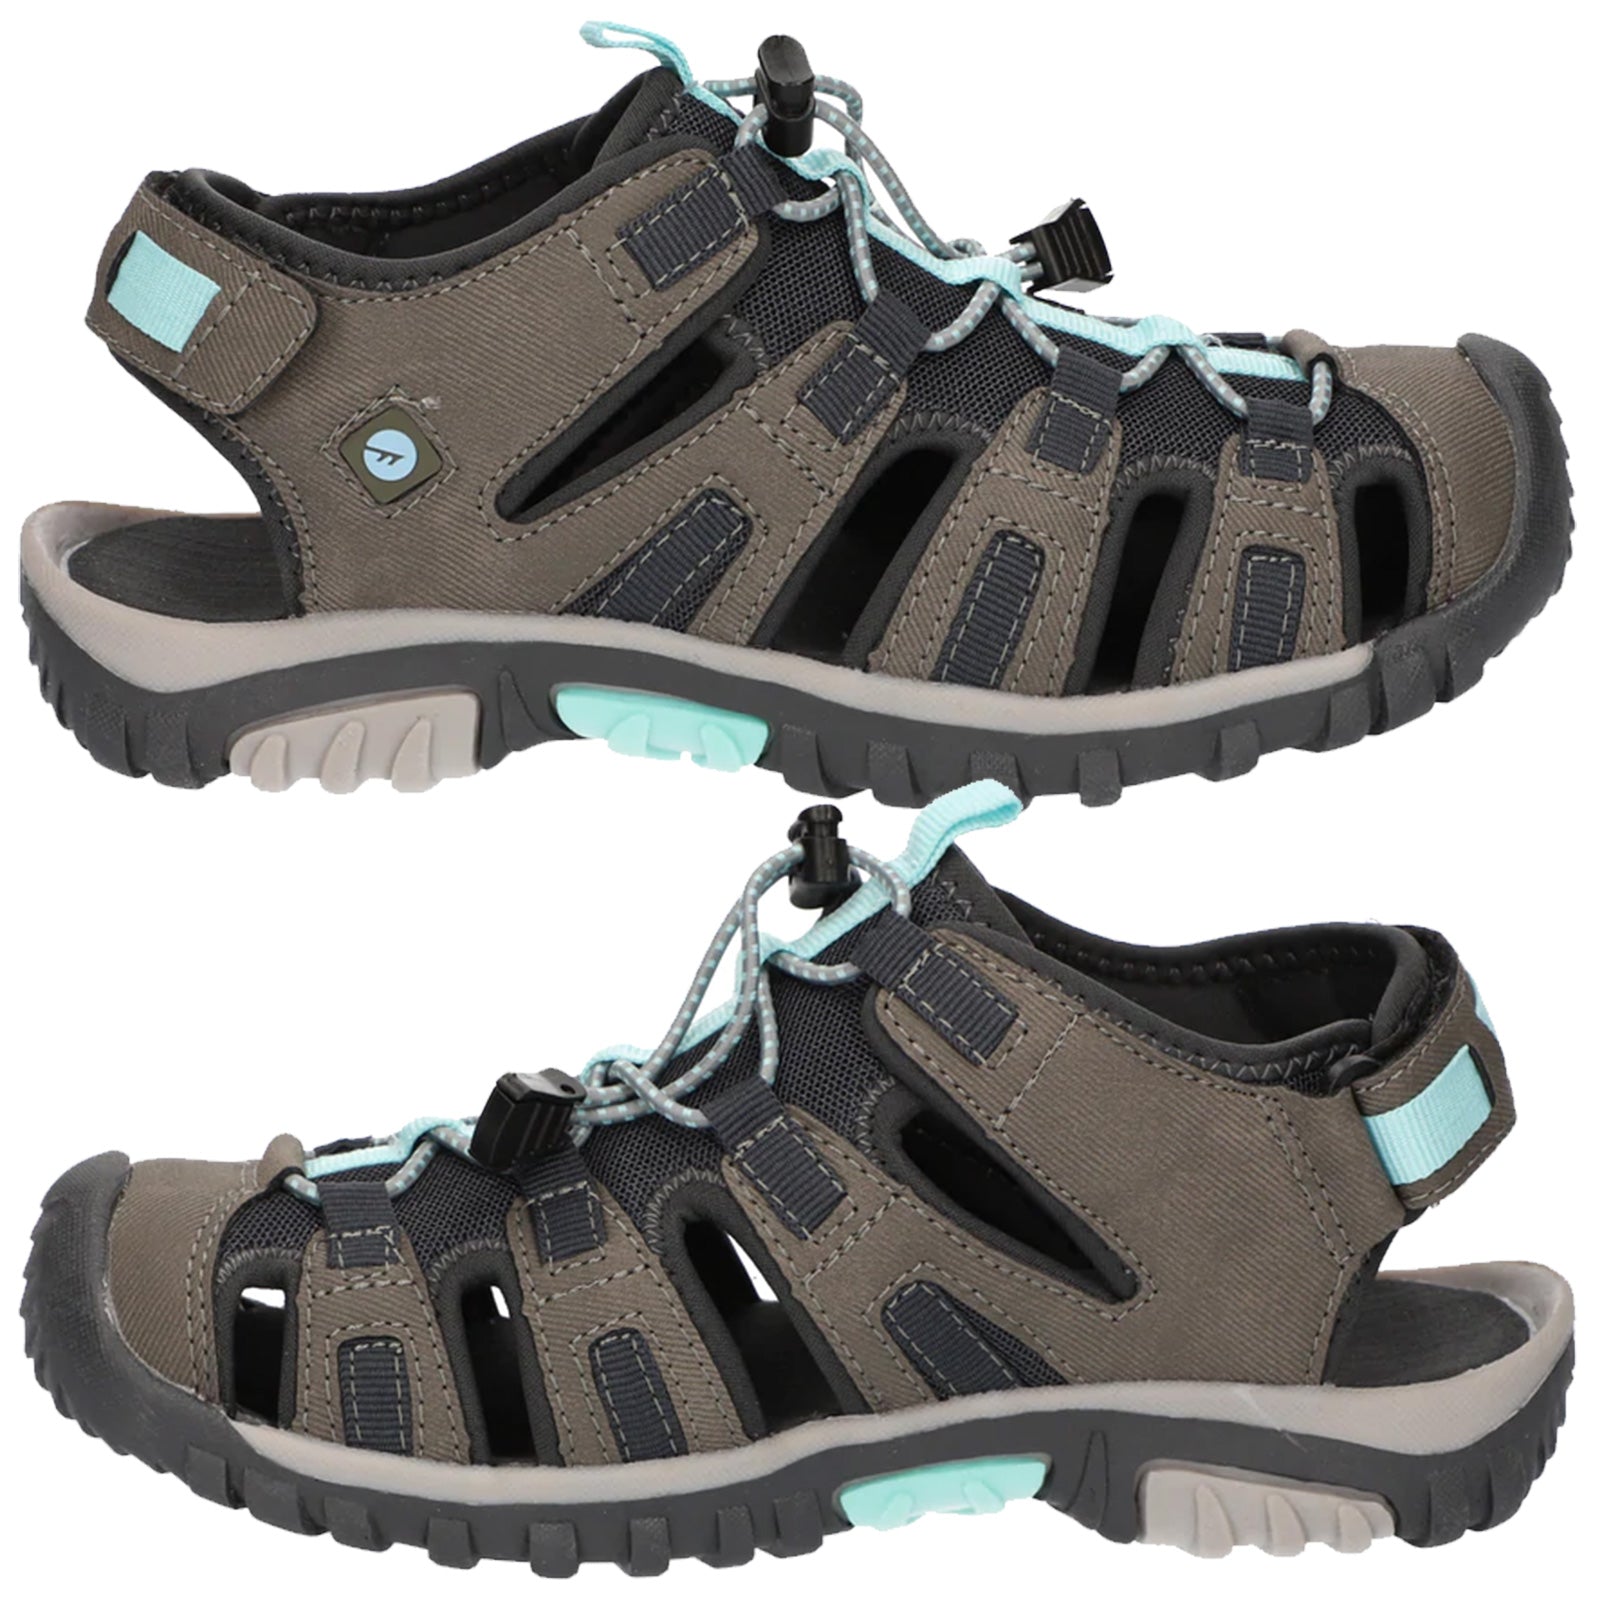 Hi-Tec Ladies Cove Sport Walking Sandals – More Sports